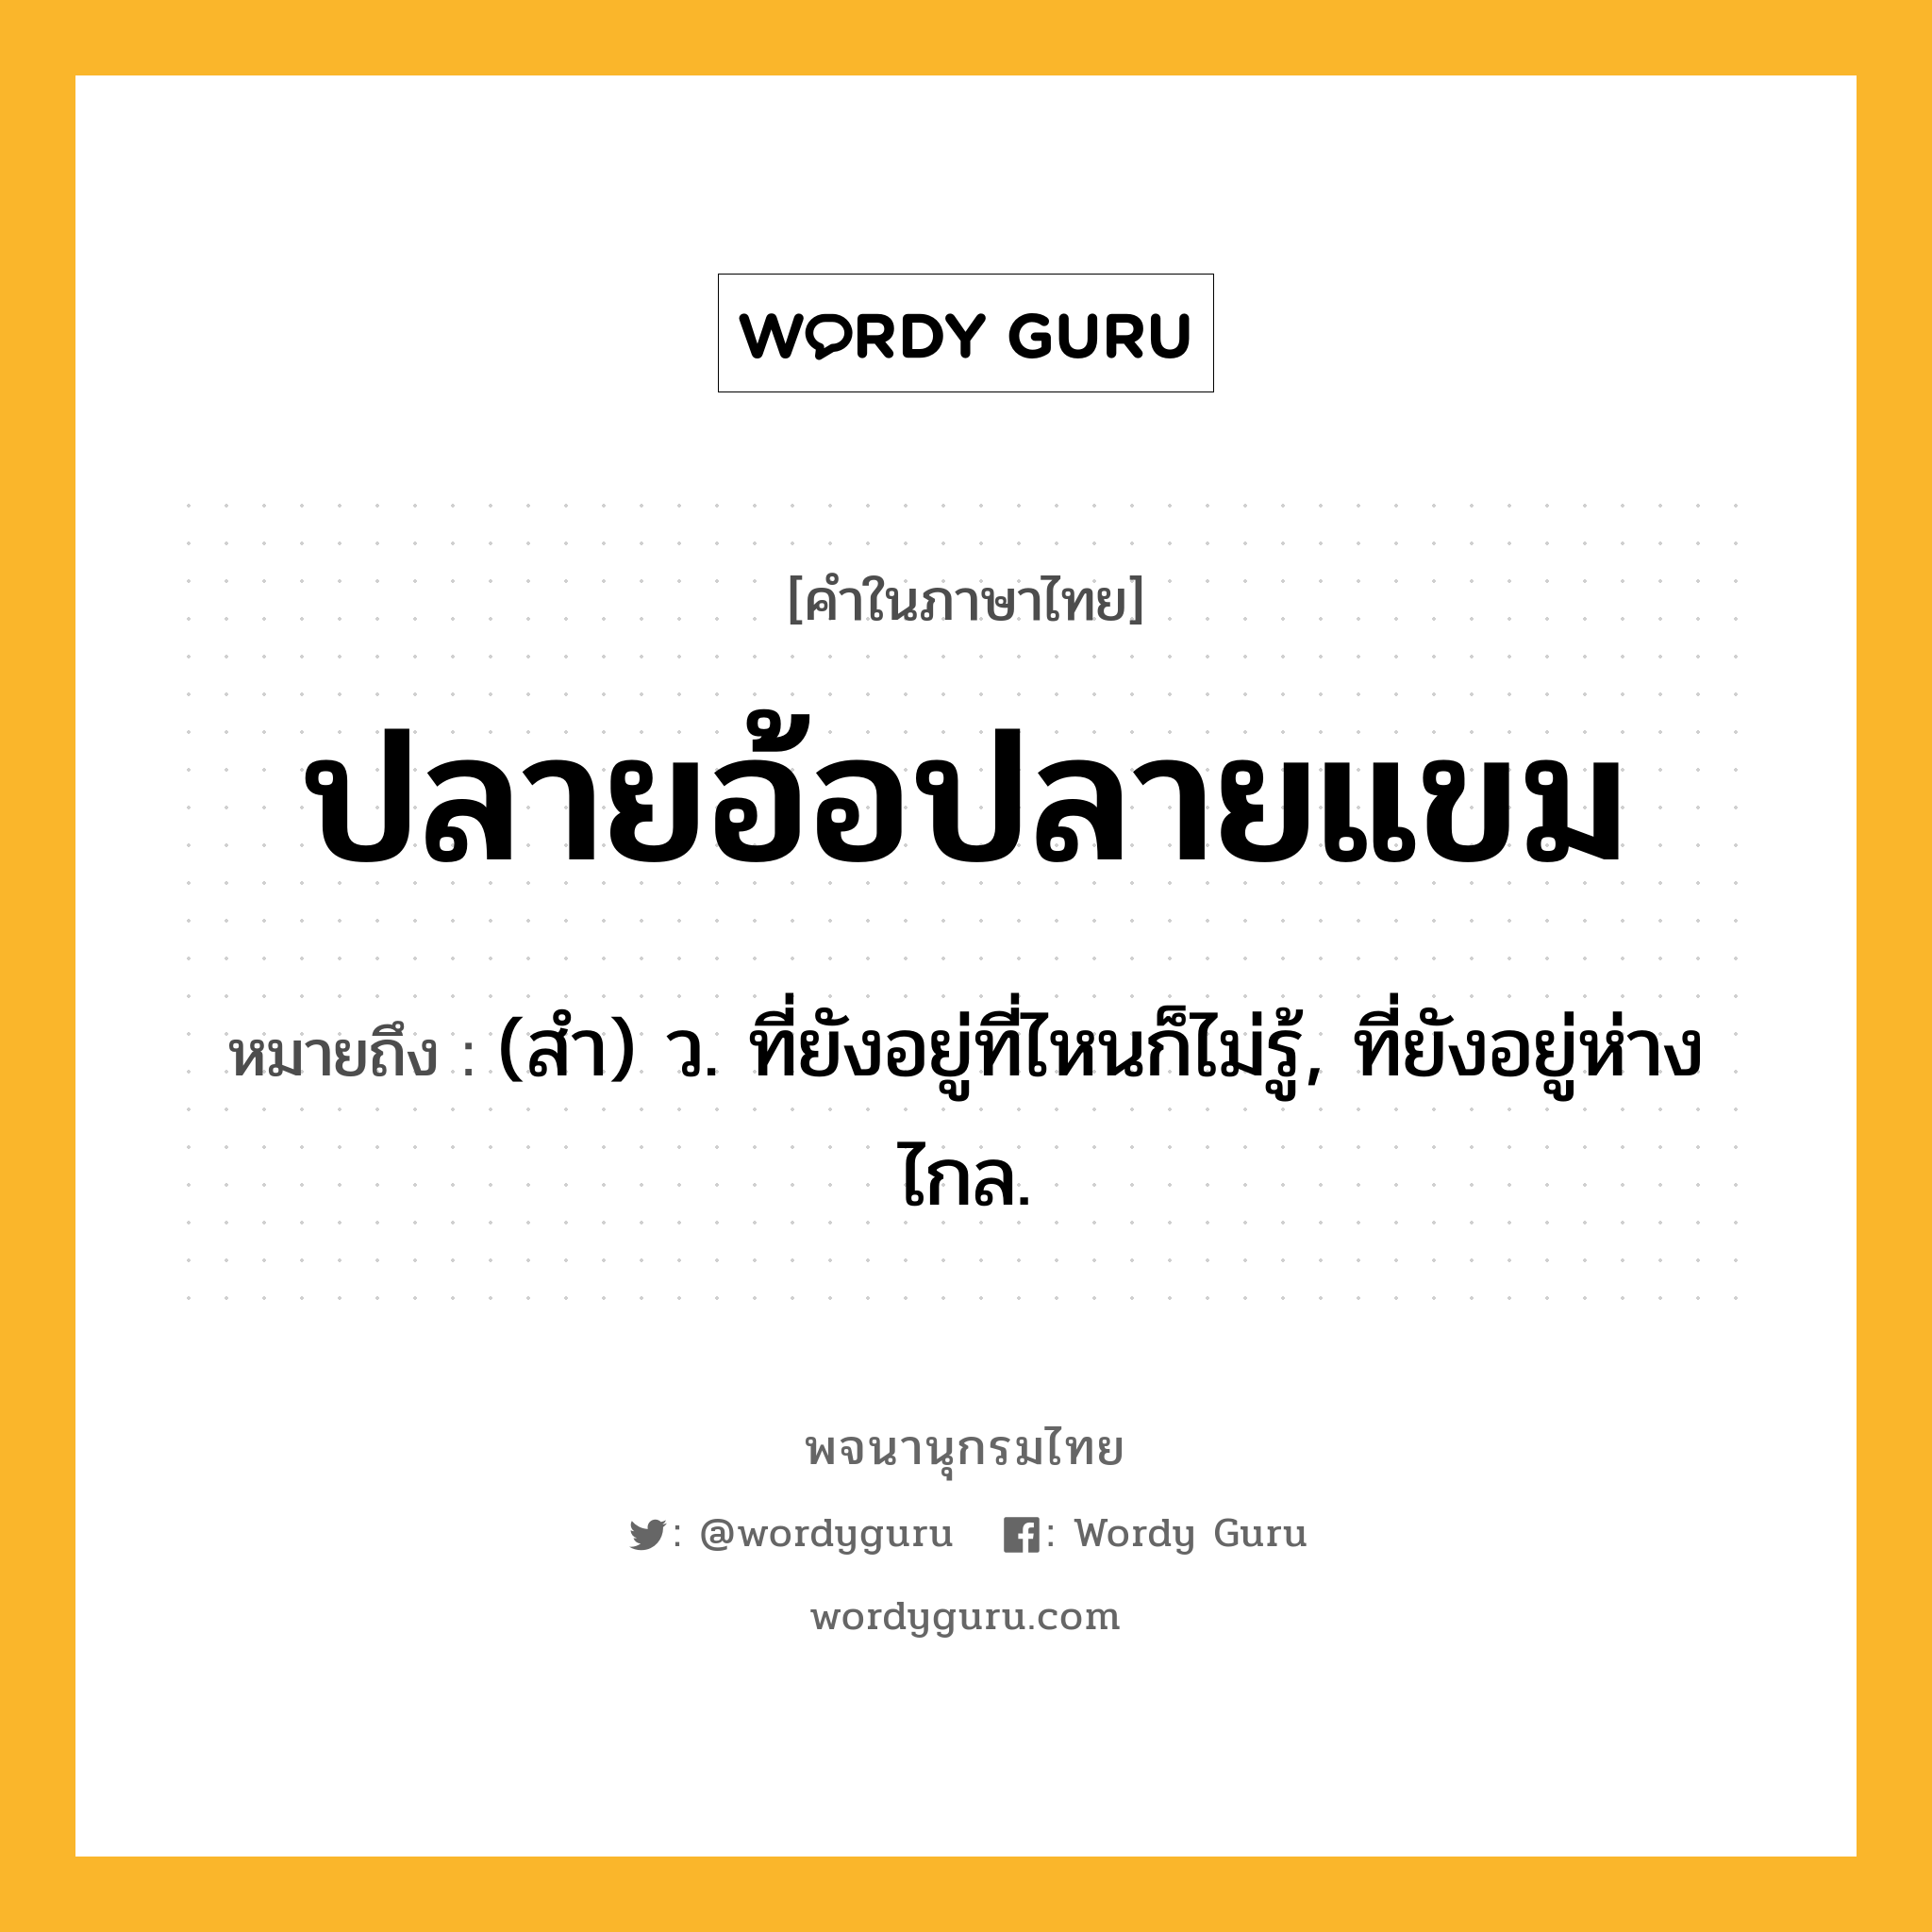 ปลายอ้อปลายแขม ความหมาย หมายถึงอะไร?, คำในภาษาไทย ปลายอ้อปลายแขม หมายถึง (สํา) ว. ที่ยังอยู่ที่ไหนก็ไม่รู้, ที่ยังอยู่ห่างไกล.